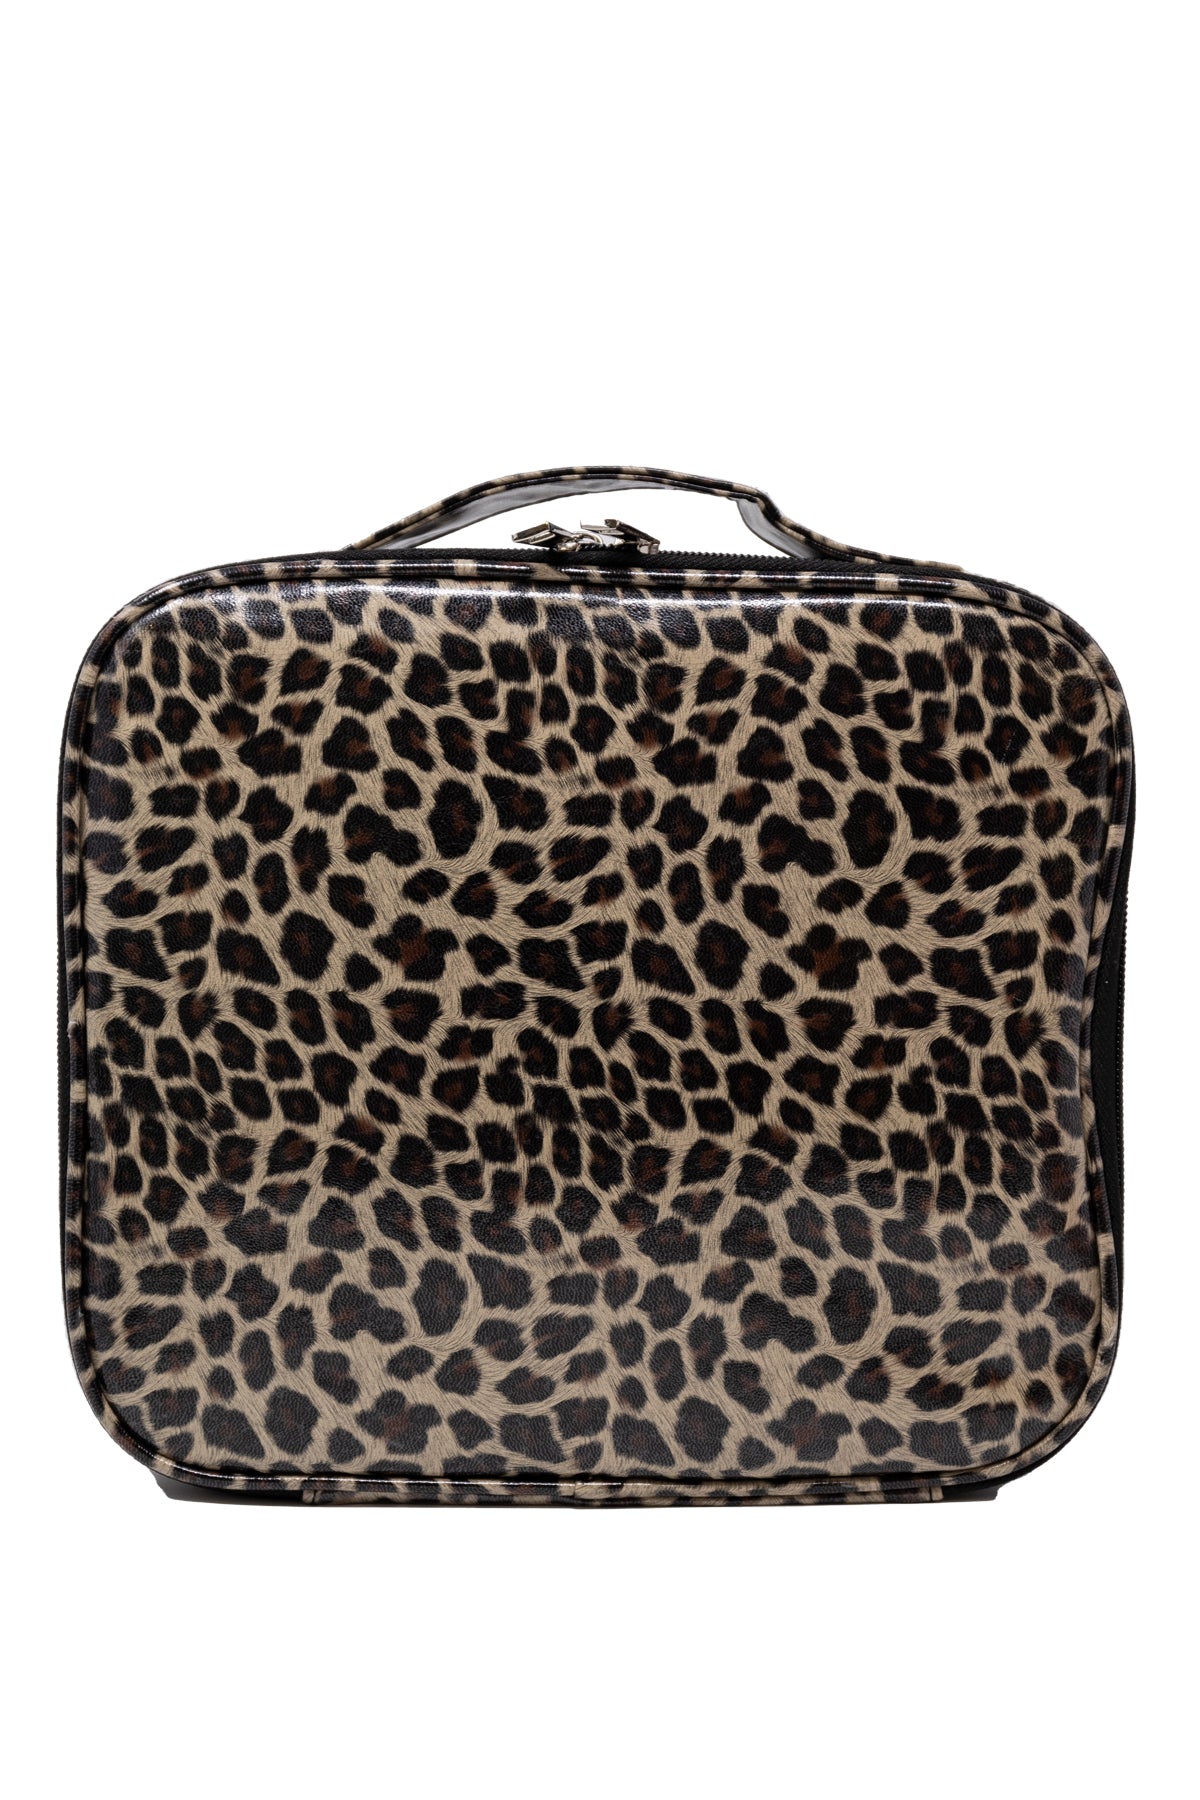 Cheetah Print Makeup Bags